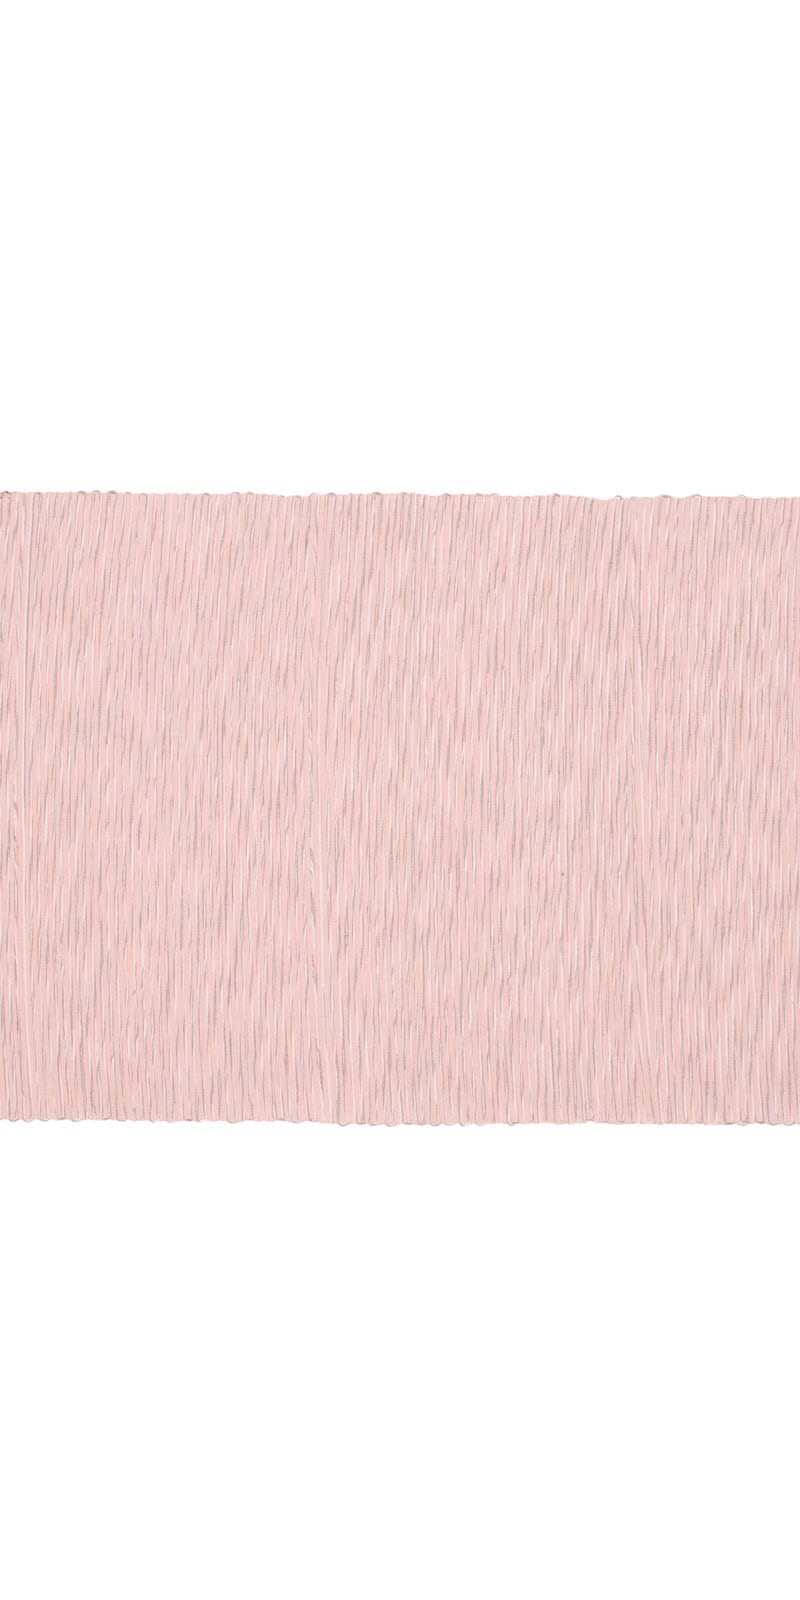 GÖZZE Platzset MERANO 35 x 50 cm rosa